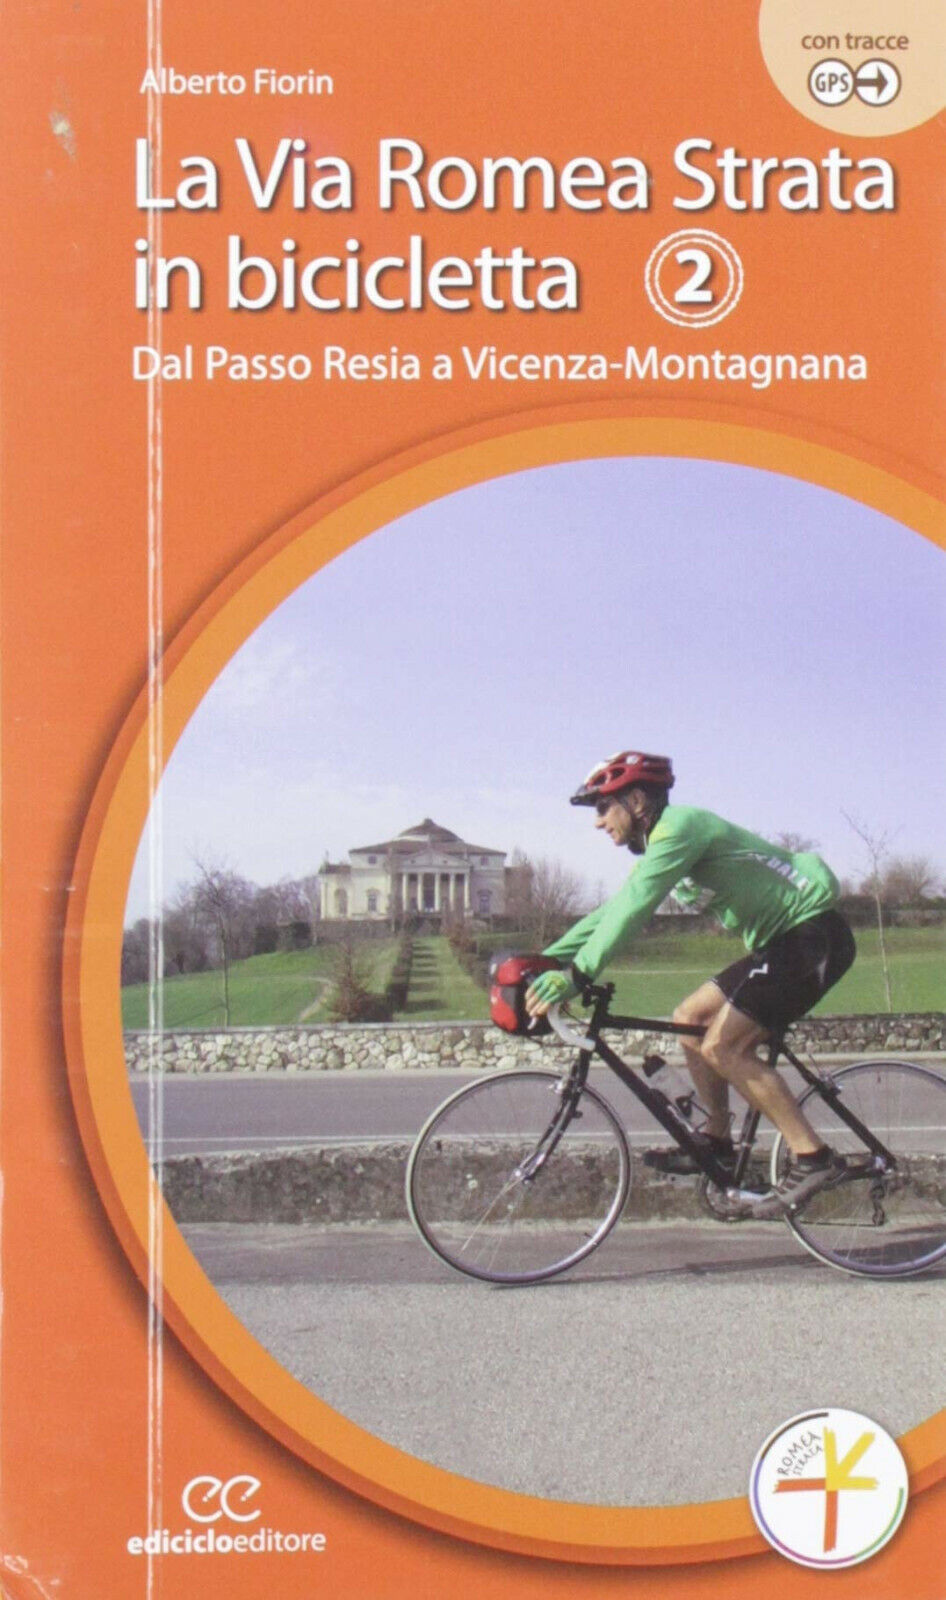 la via romea strata in bicicletta 2 - Alberto Fiorin - Ediciclo, 2019